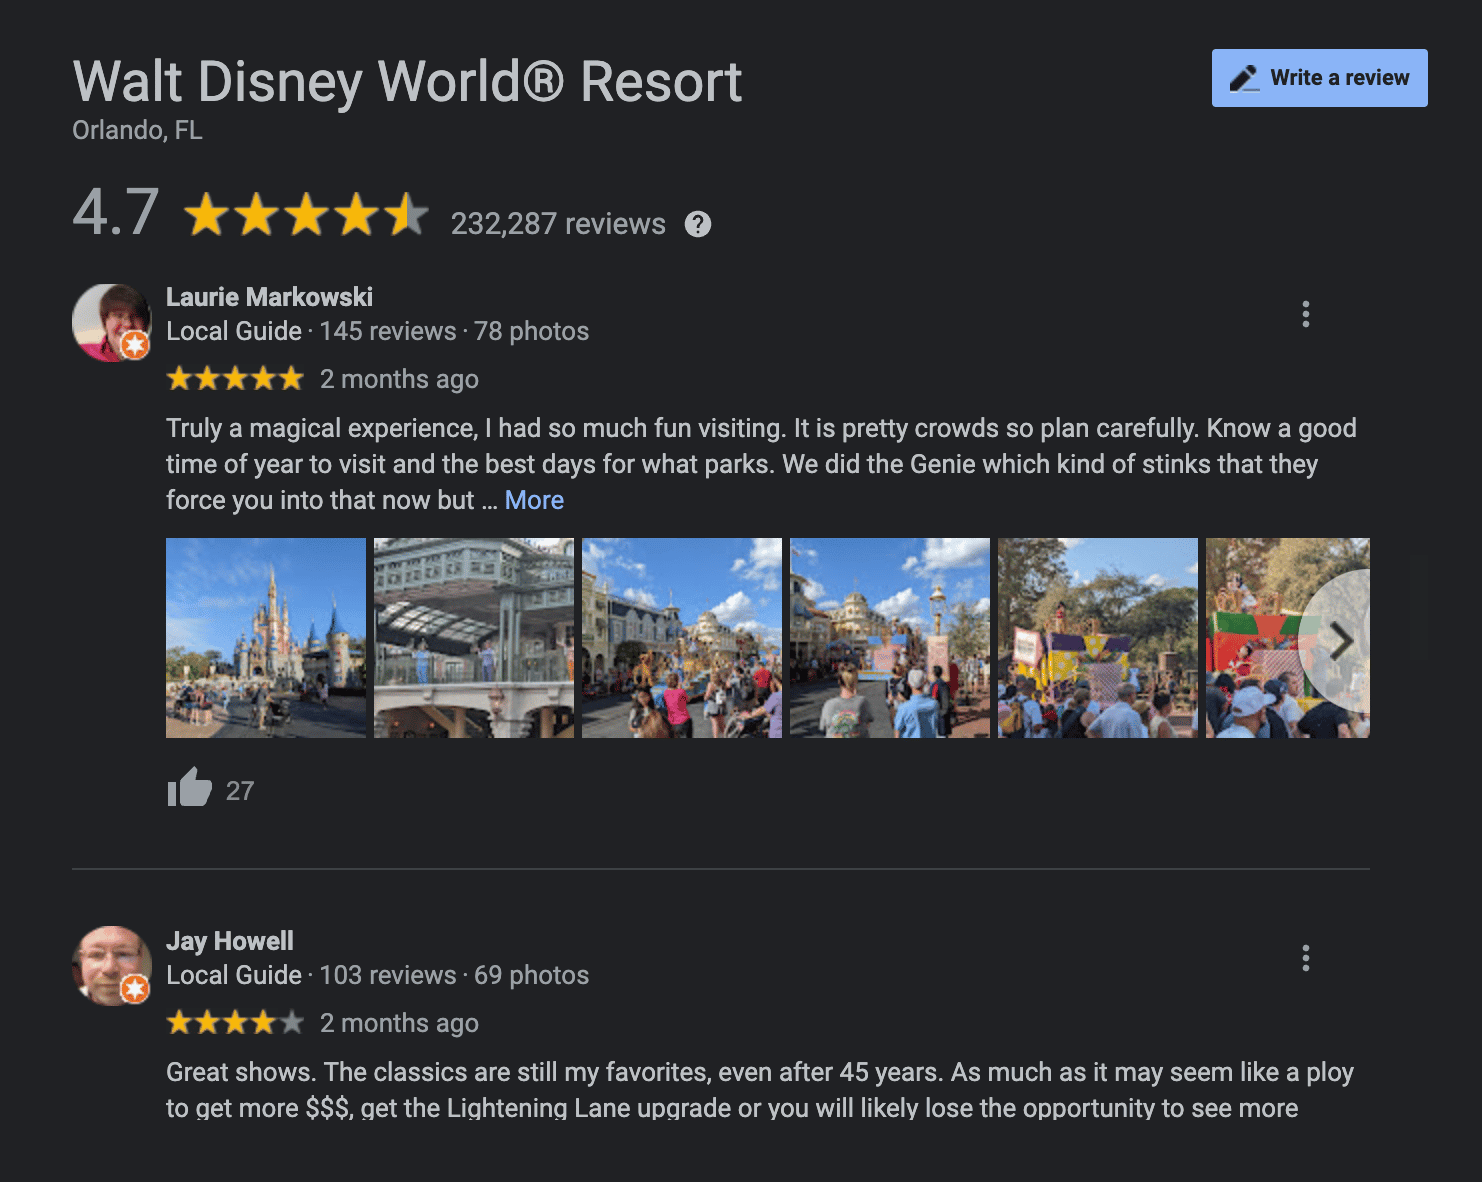  Een voorbeeld van een Google Review voor Walt Disney World